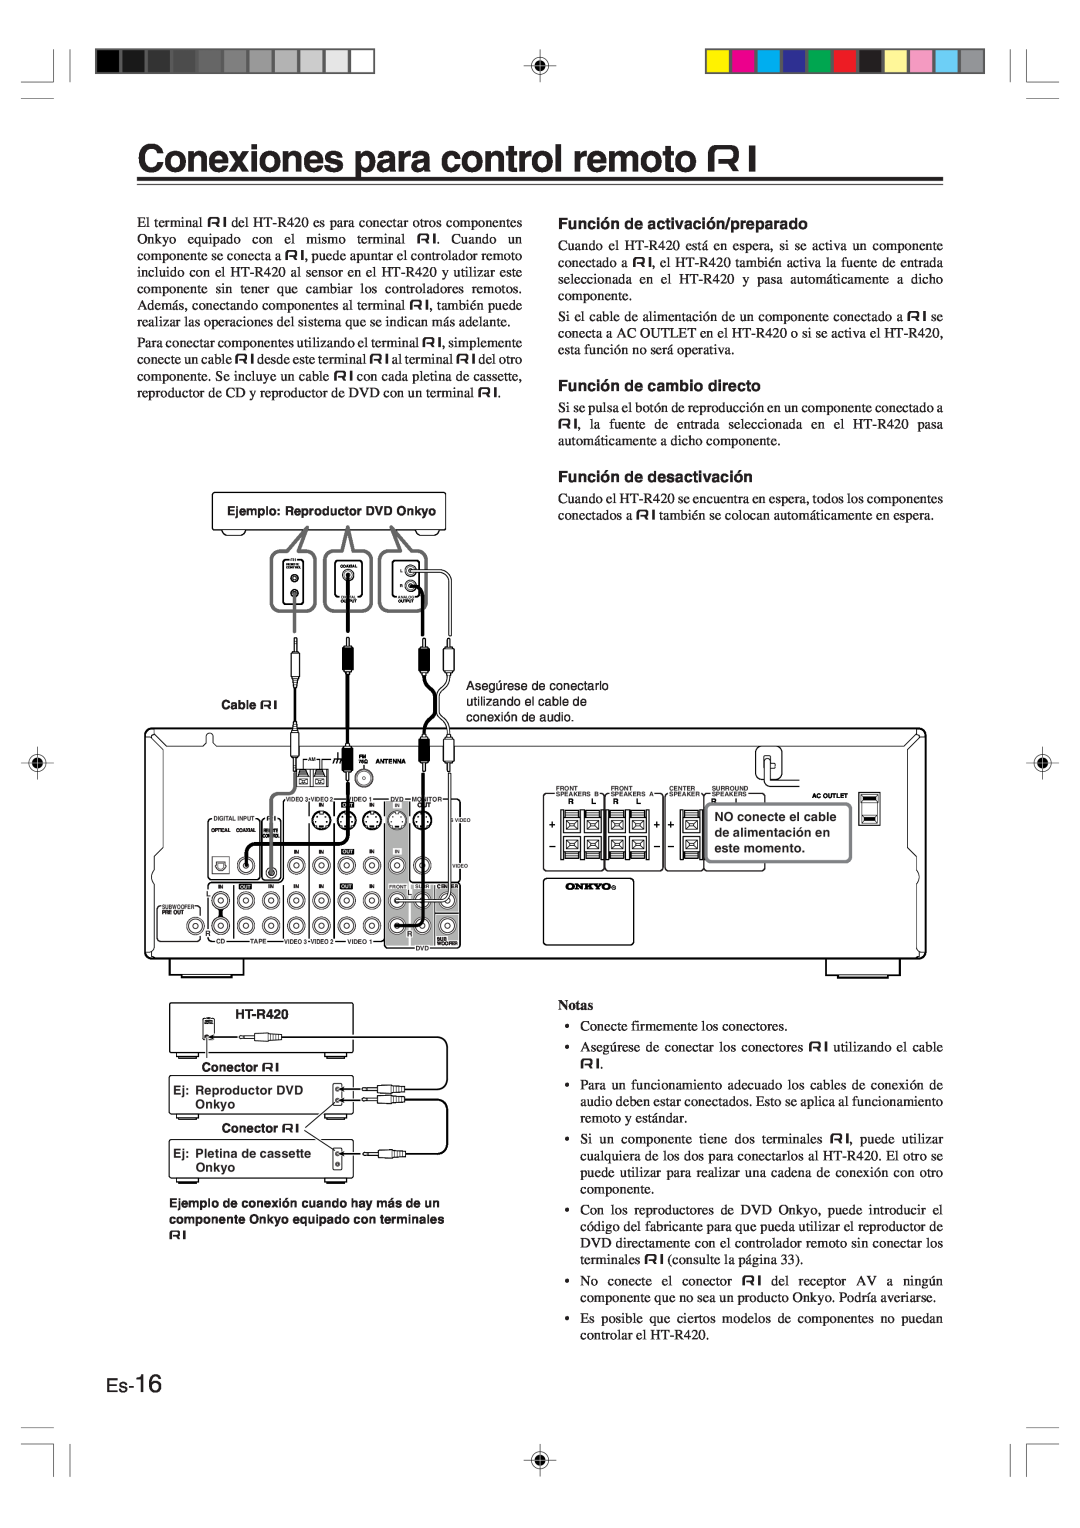 Onkyo HT-R420 manual Conexiones para control remoto z, Es-16, Notas 